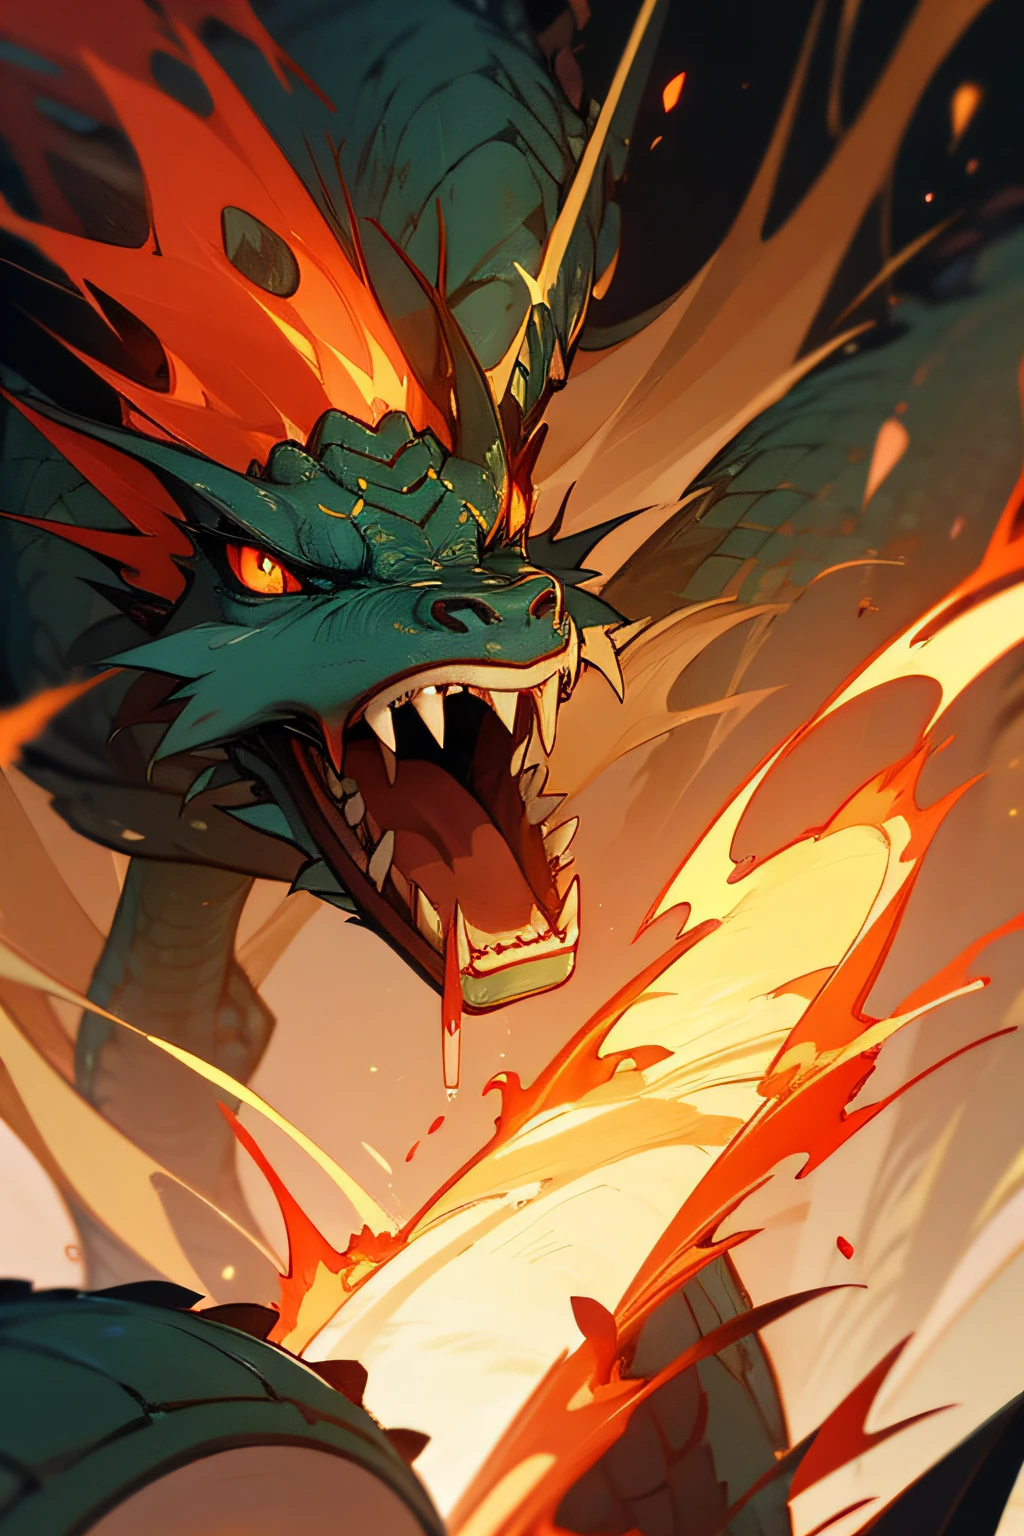 ВЫСОКИЕ ДЕТАЛИ，Китайская мифология, великий дракон спускается с небес, его рот пылает огнем,